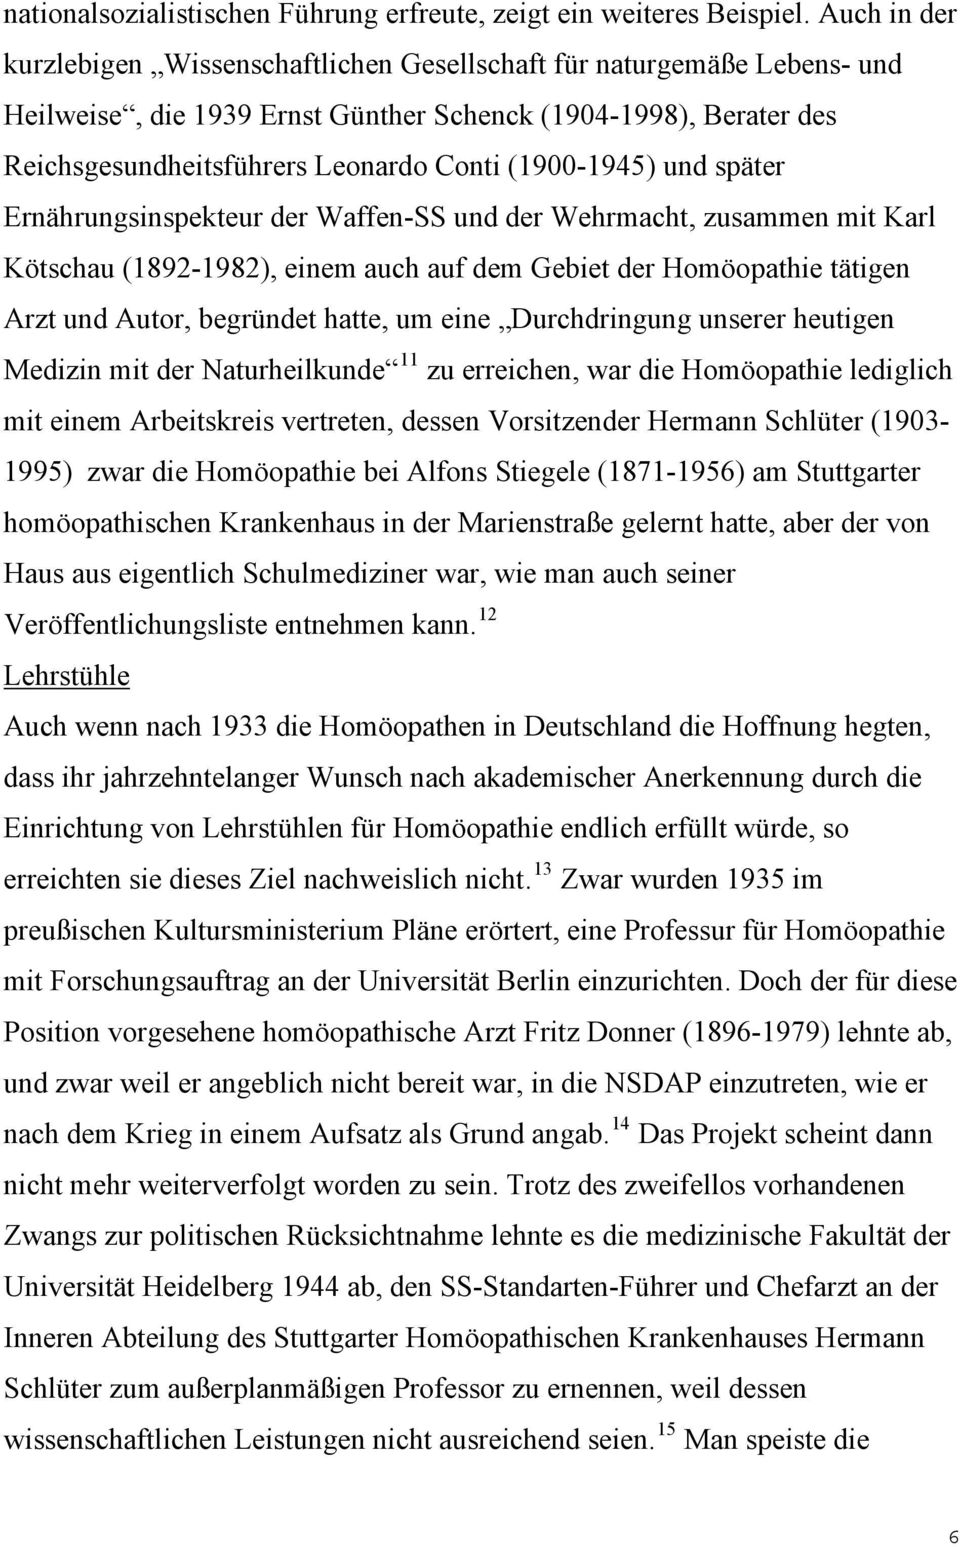 (1900-1945) und später Ernährungsinspekteur der Waffen-SS und der Wehrmacht, zusammen mit Karl Kötschau (1892-1982), einem auch auf dem Gebiet der Homöopathie tätigen Arzt und Autor, begründet hatte,